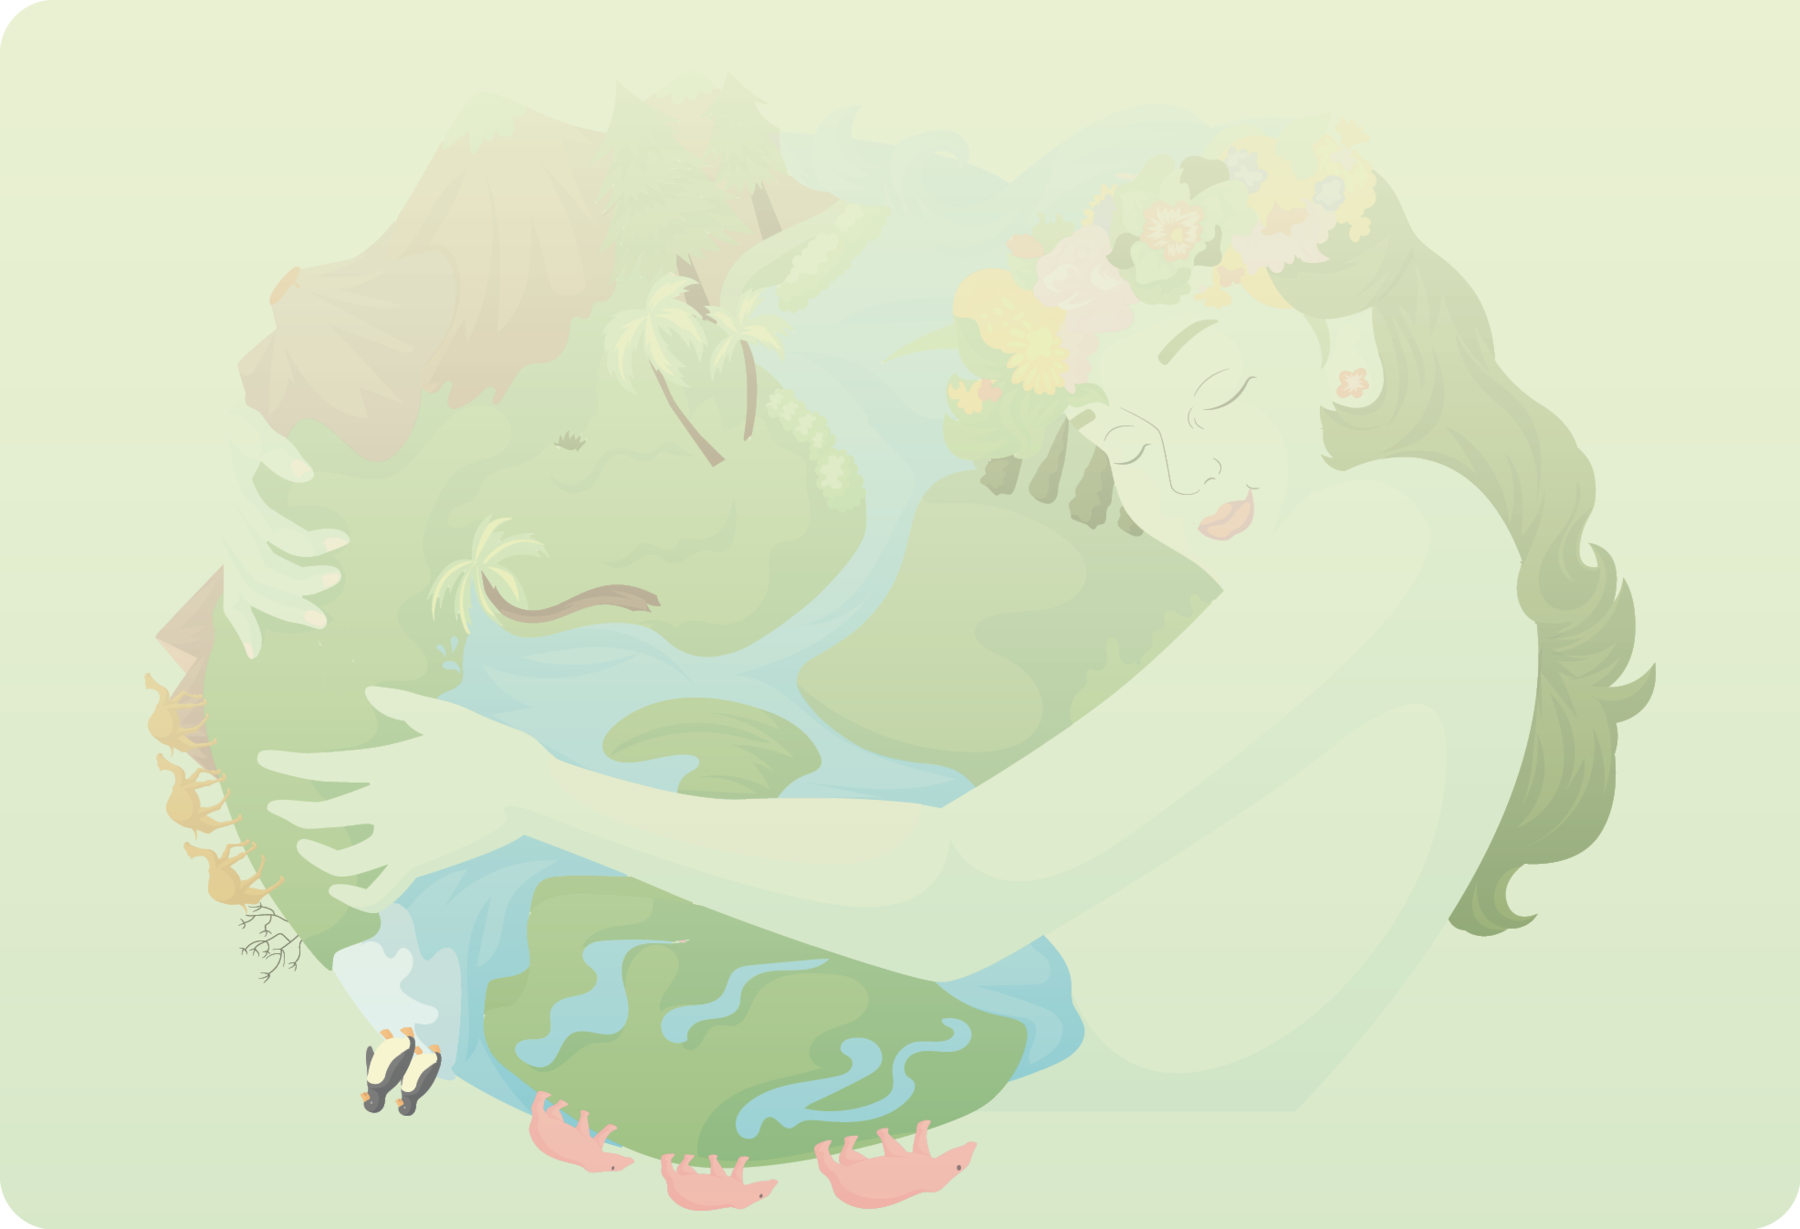 Ilustração. Em plano de fundo, uma mulher vista da cintura para cima, com o corpo para a direita, de cabelos longos escuros, com coroa de flores sobre a cabeça. Ela está de olho fechados, abraçando com os braços, uma esfera com cursos de água em azul-claro e partes com vegetação em verde e partes em marrom.